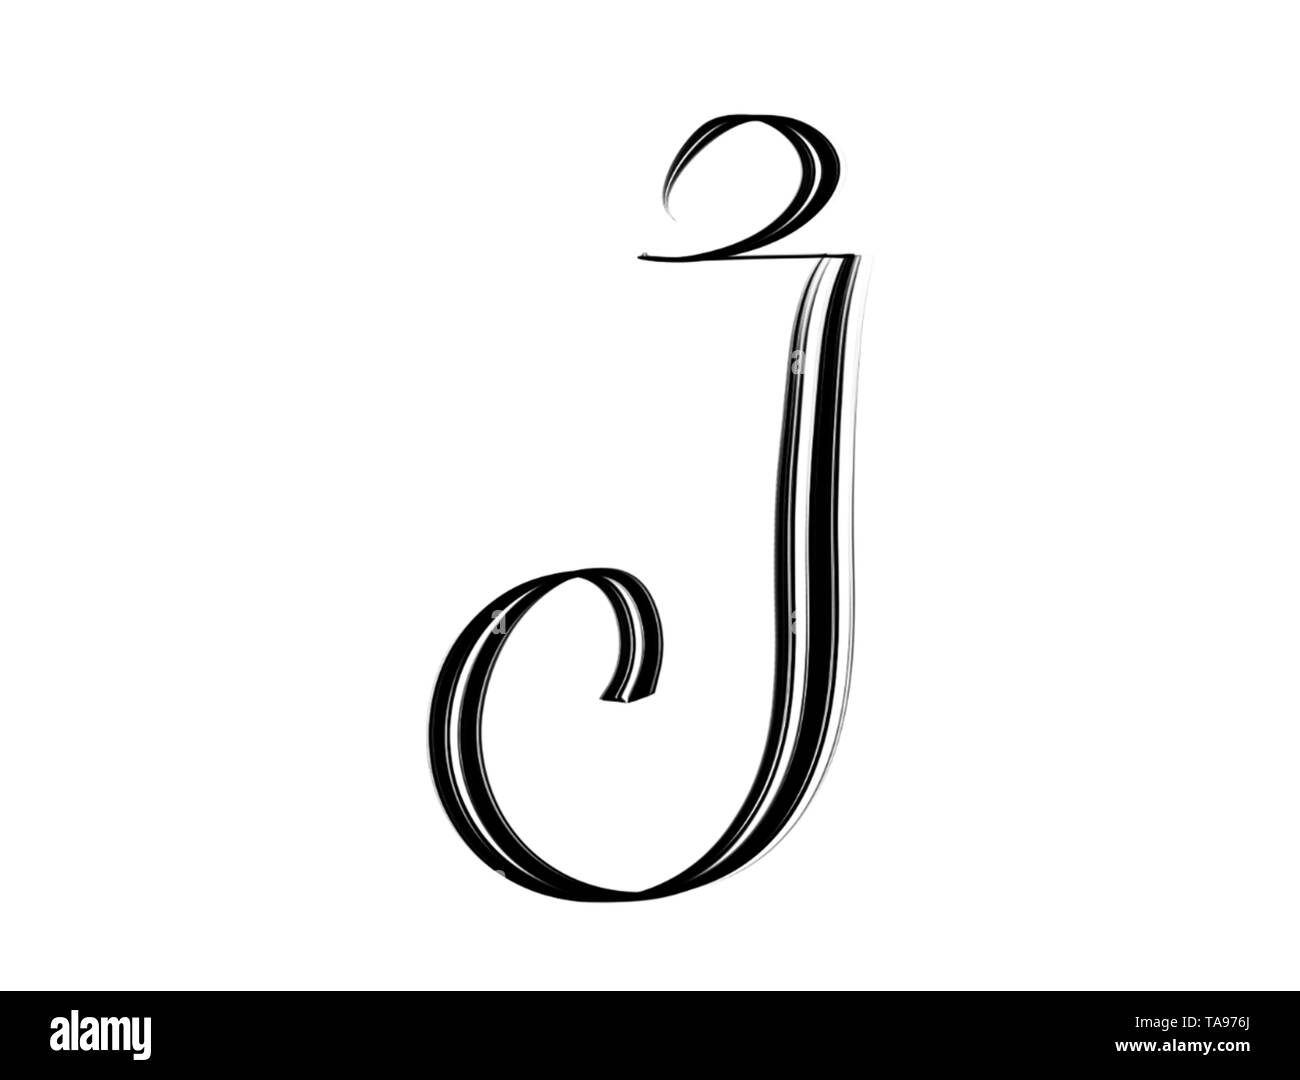 Elegant letter J hand lettered in black on white background Stock ...